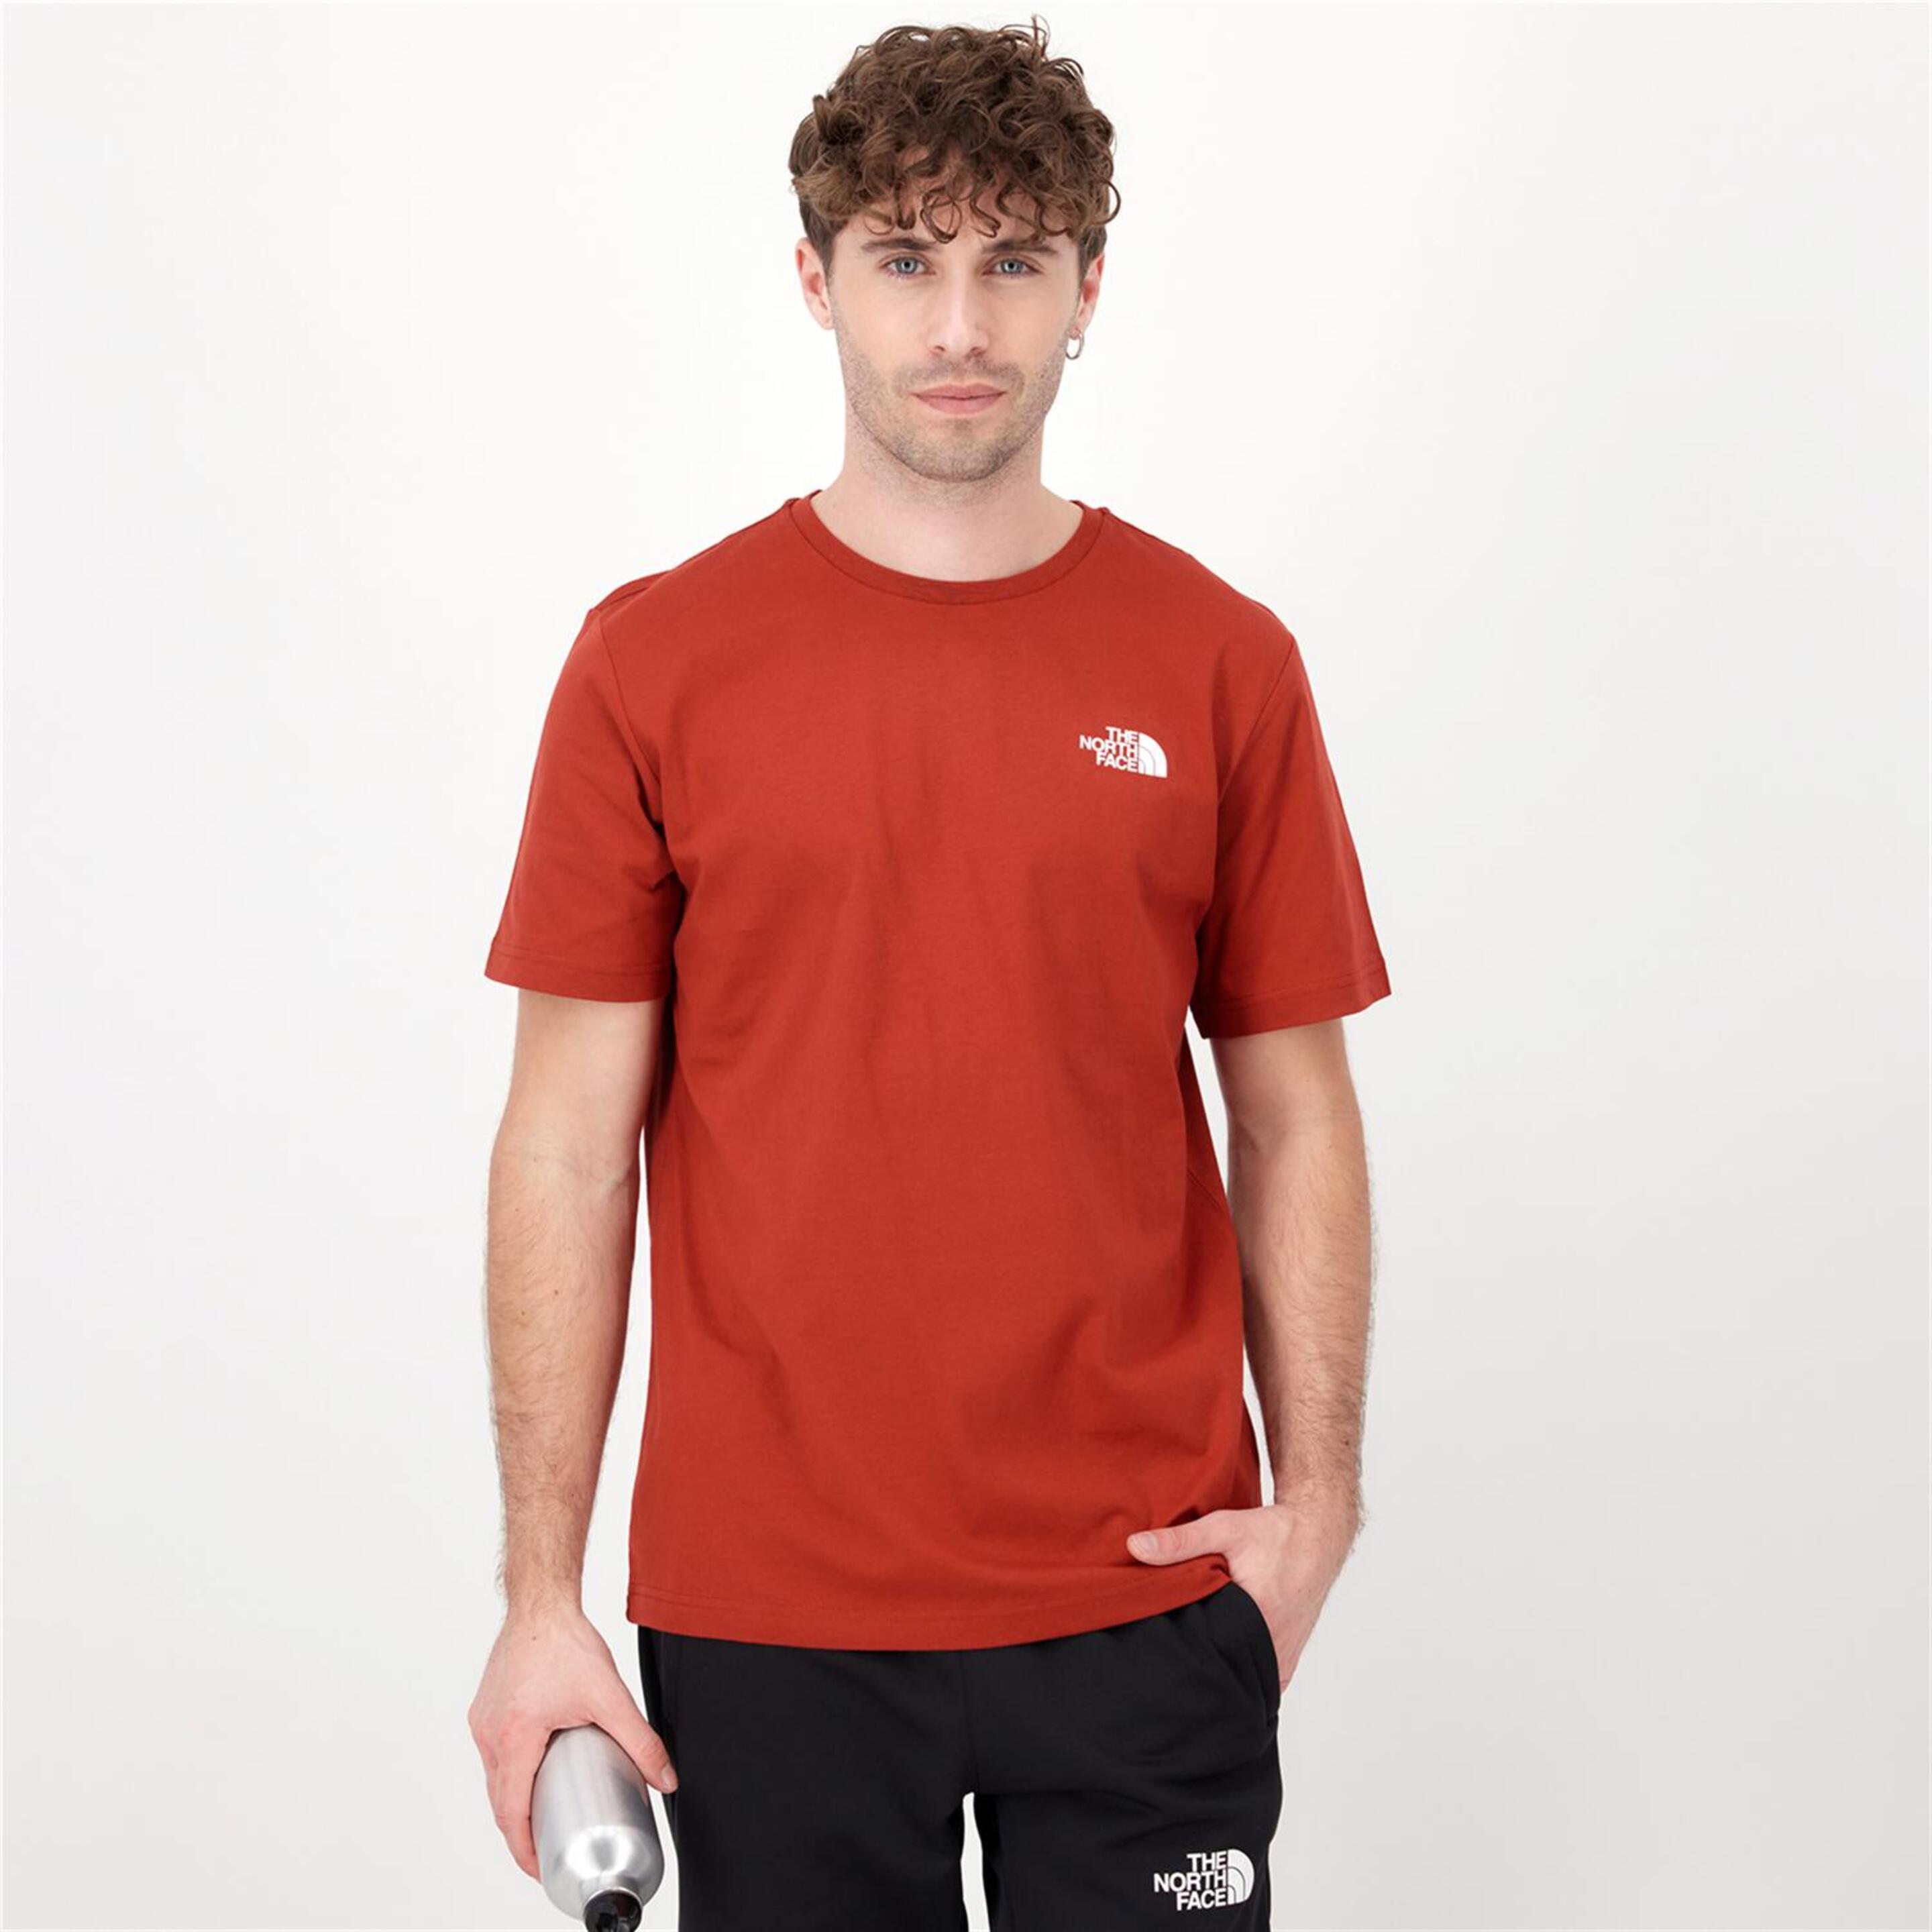 The North Face Redbox - rojo - Camiseta Montaña Hombre